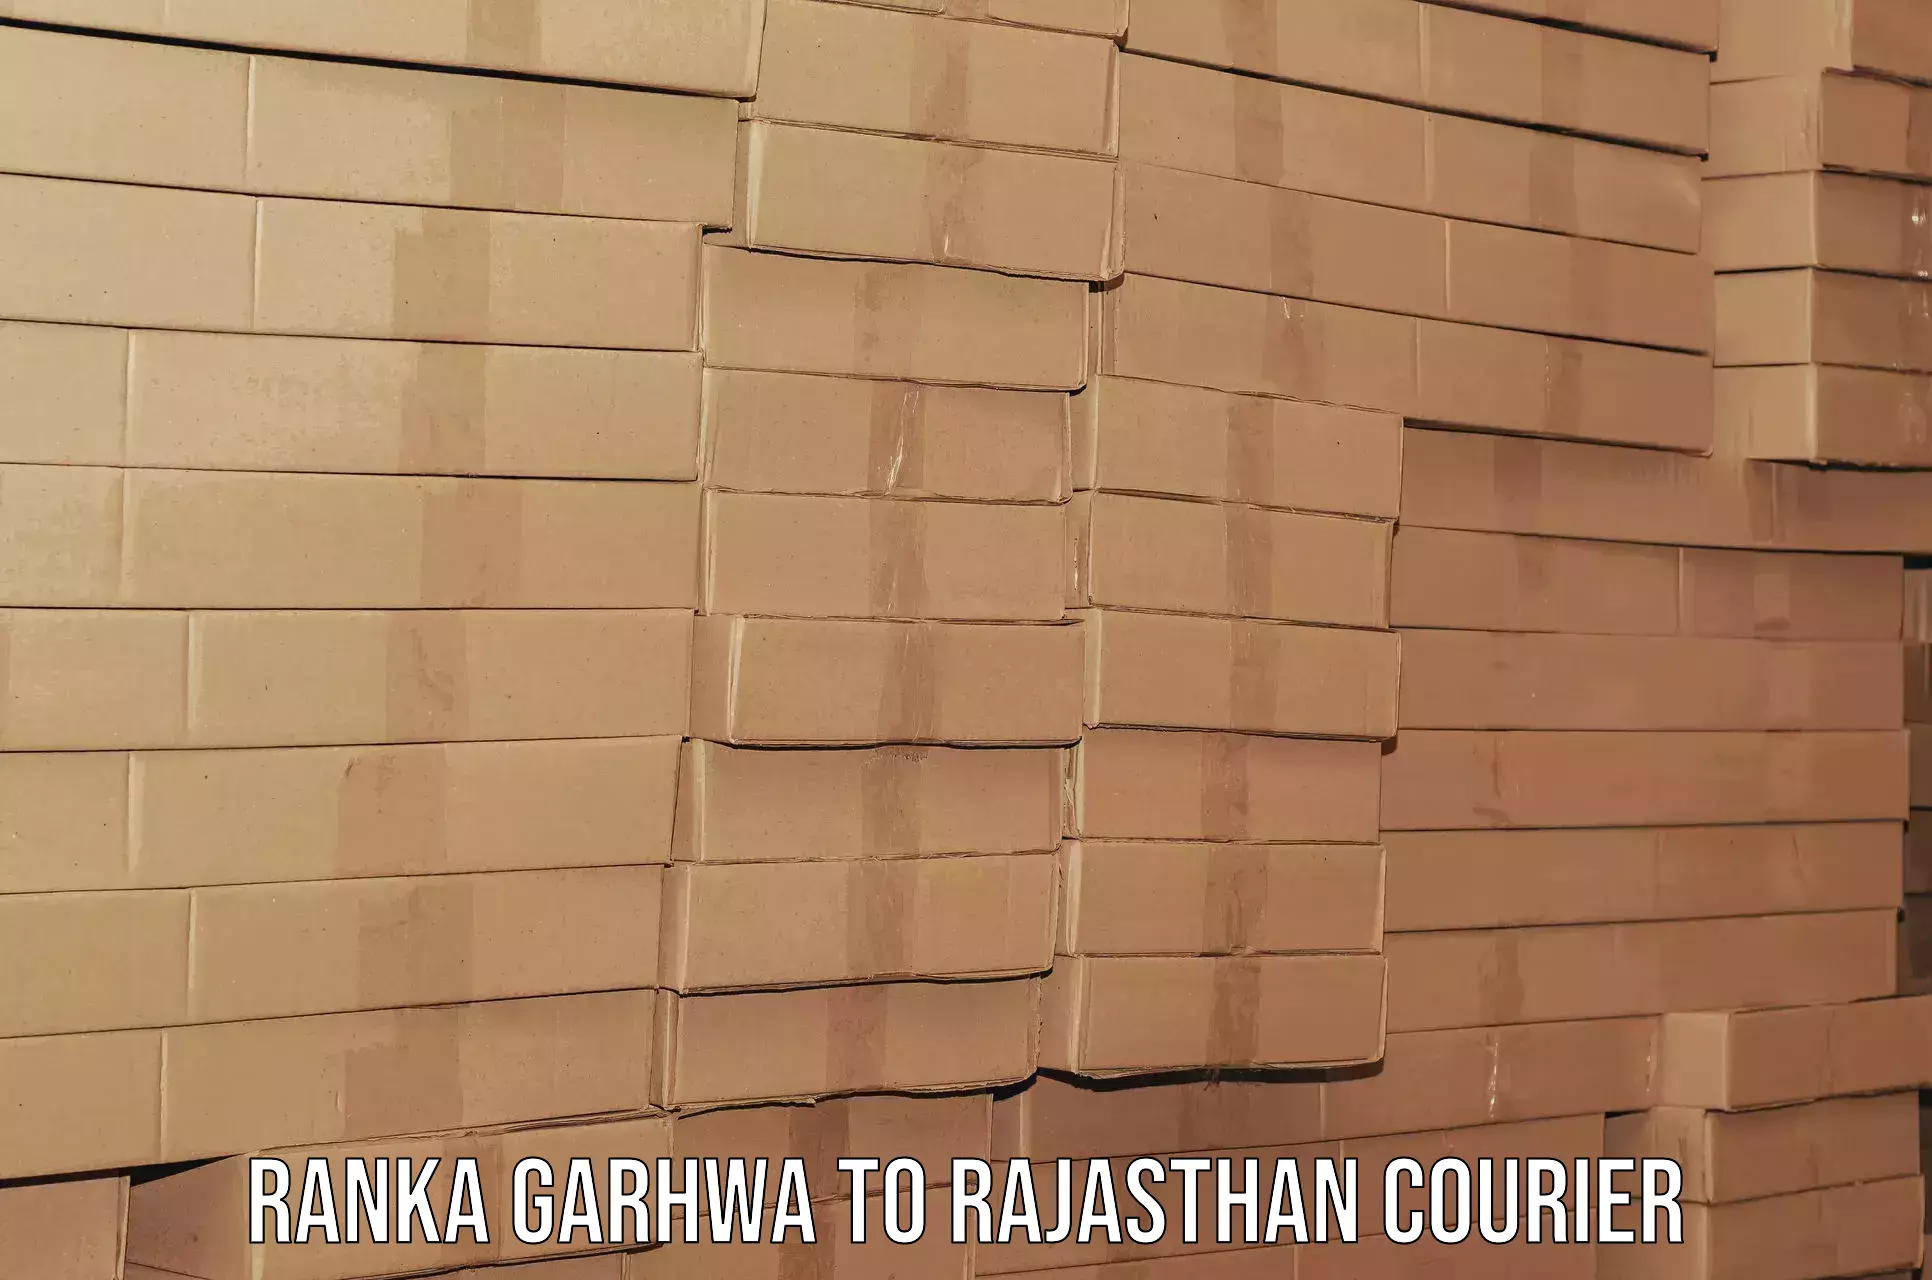 Efficient furniture movers Ranka Garhwa to Weir